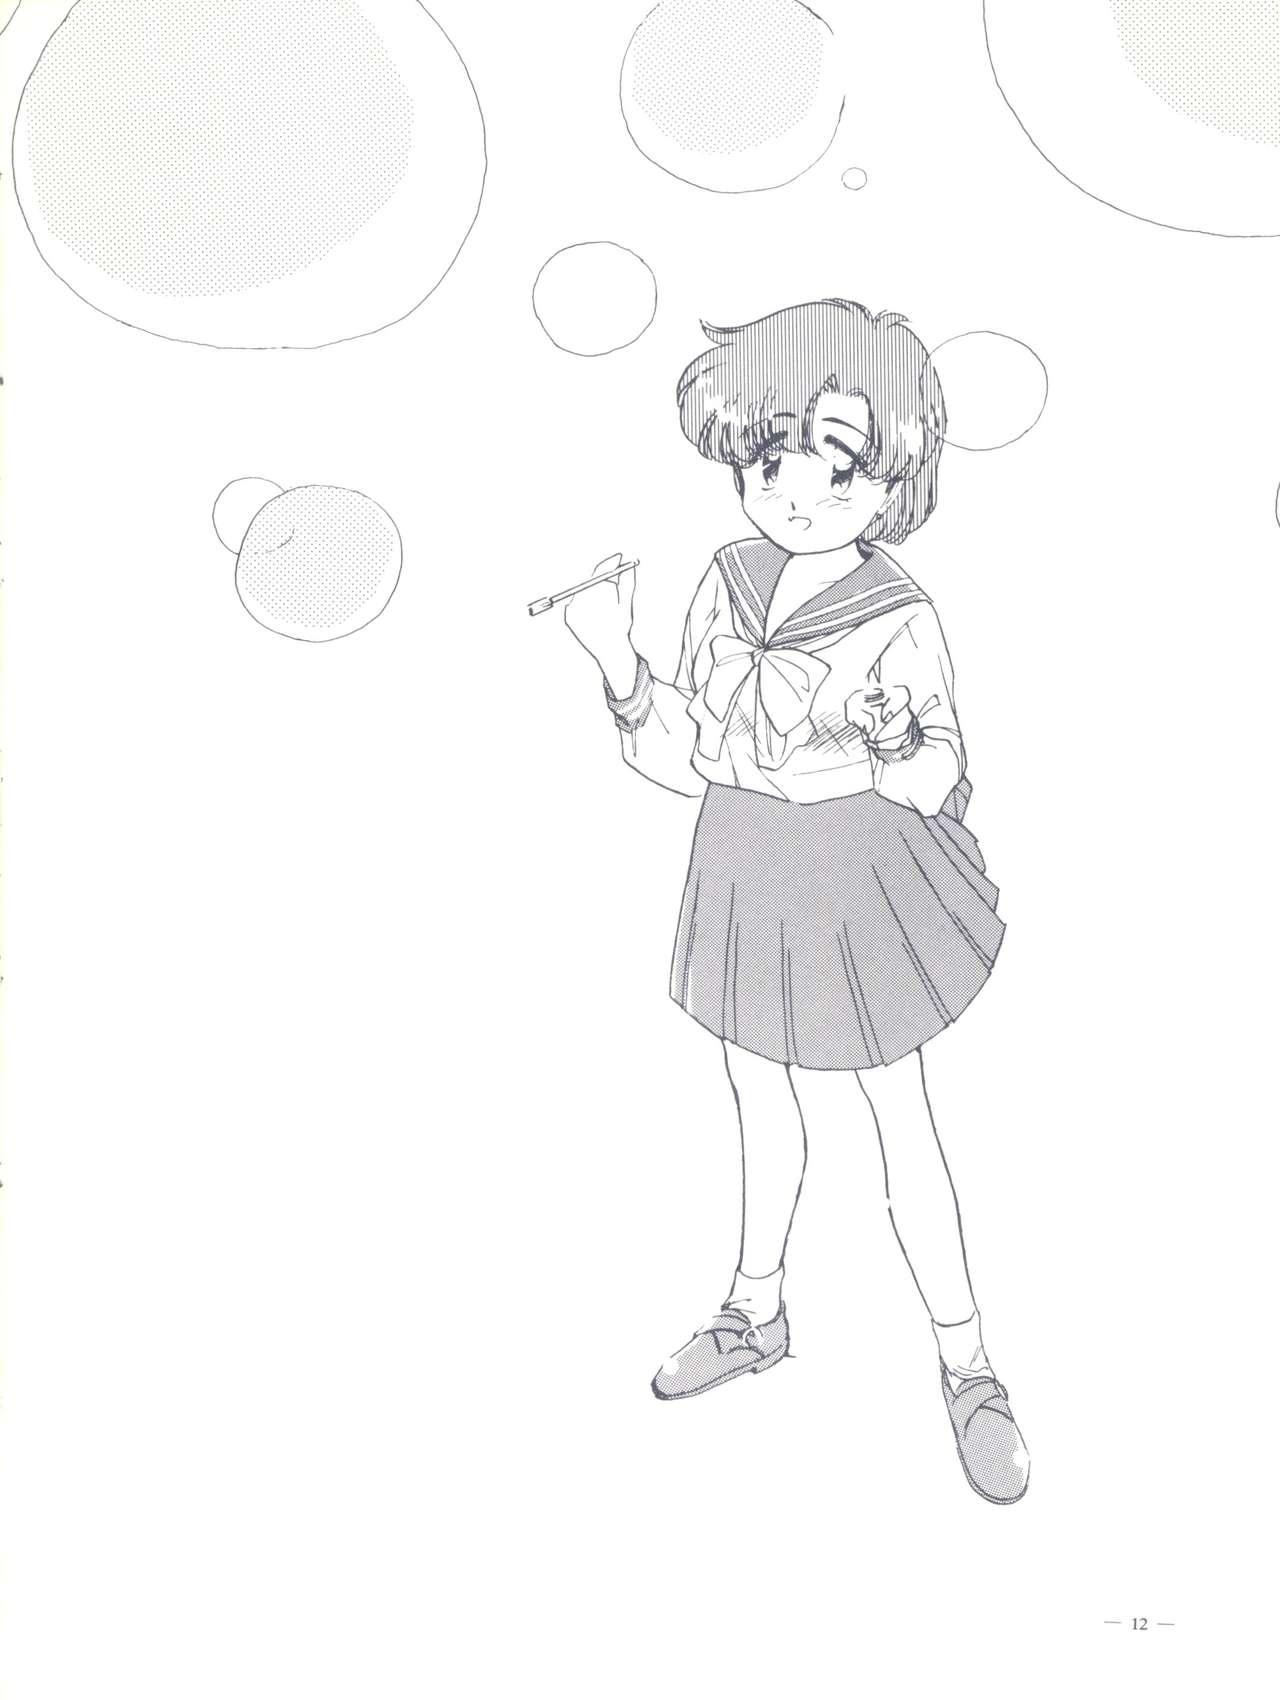 Nuru Monden Glanz 3 - Sailor moon Arrecha - Page 12